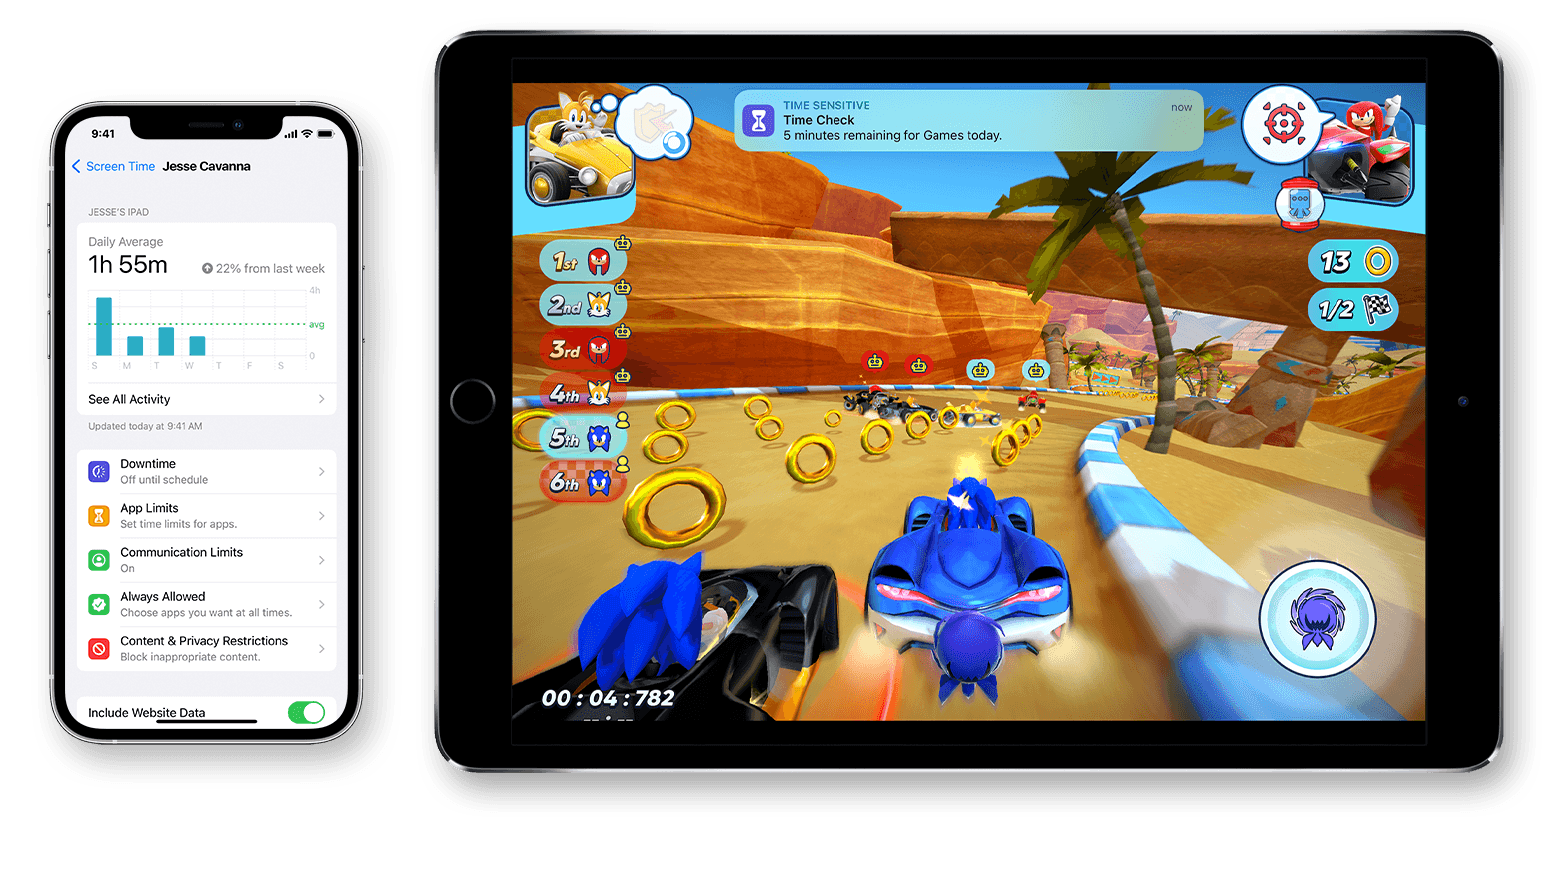 Экран iPhone, на котором показано среднее за день экранное время, и экран iPad, на котором показано время игры.